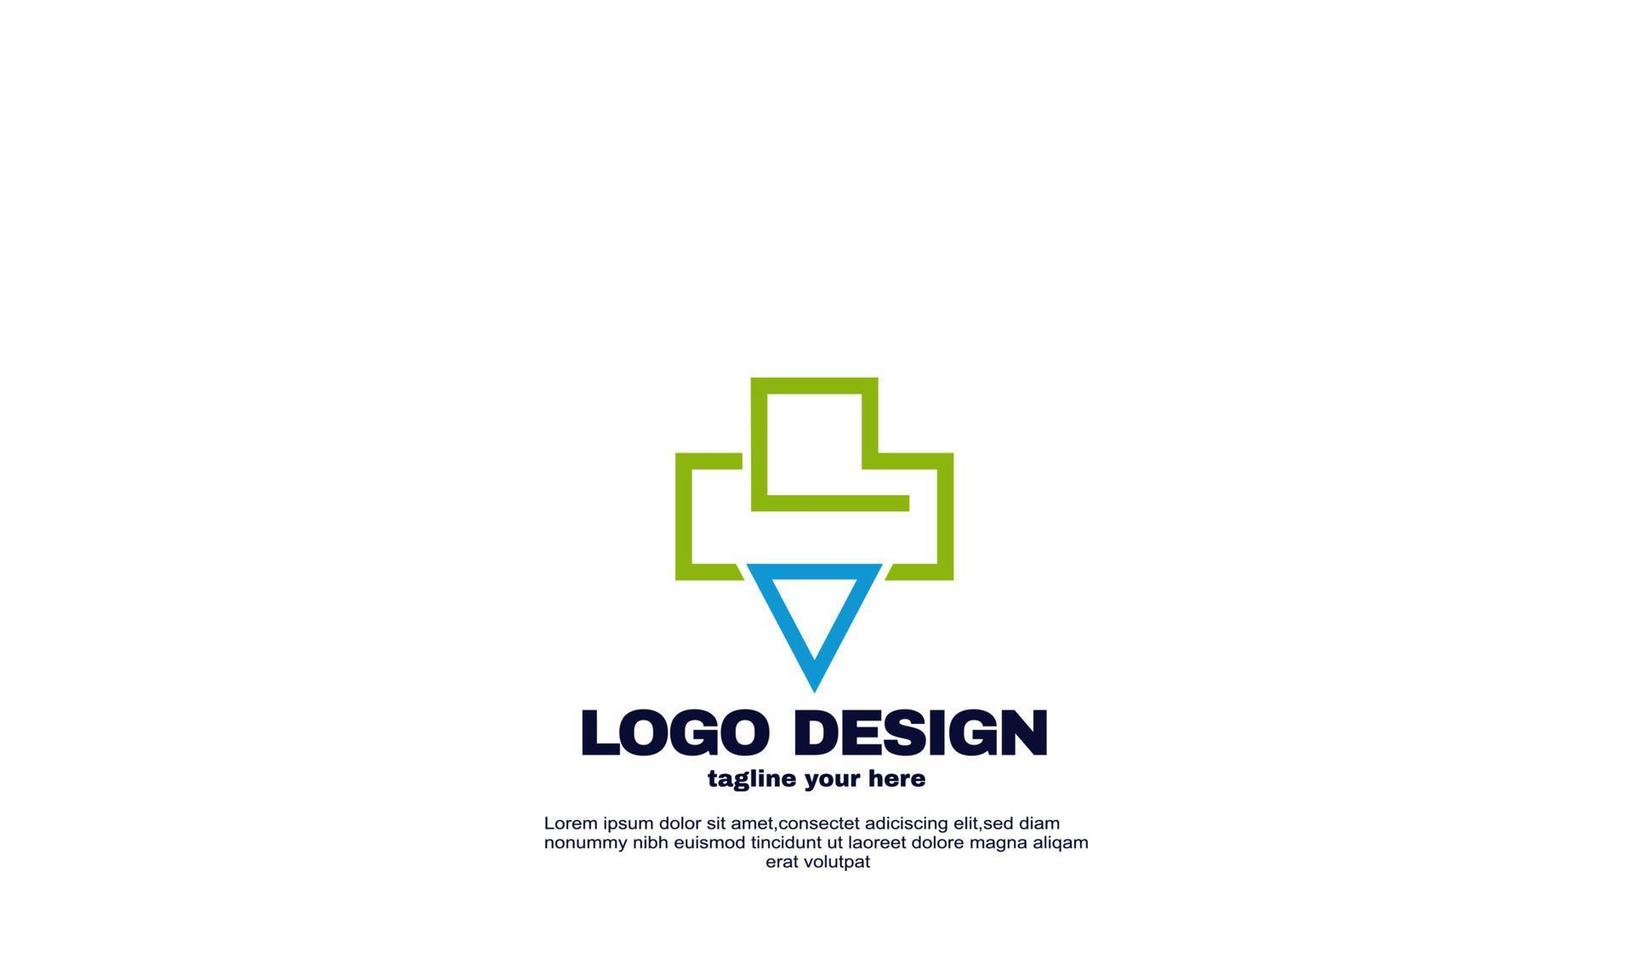 incrível vetor de modelo de design de logotipo de triângulo de saúde